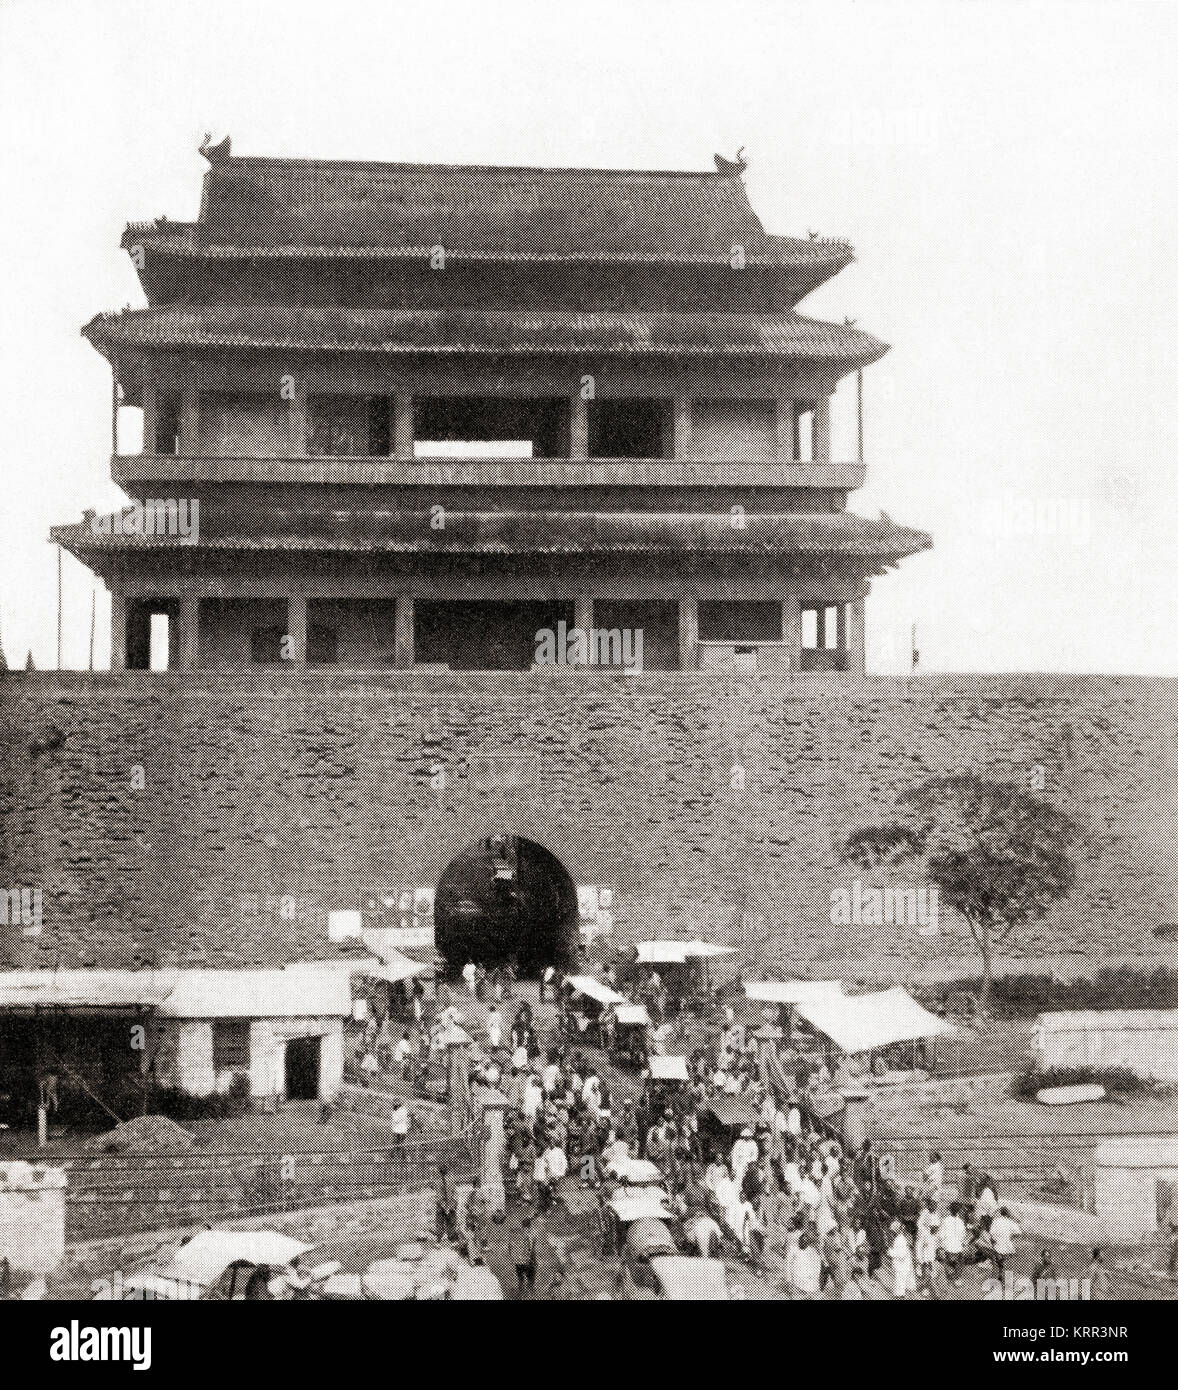 La porte de Chongwenmen aka Hata-Men Hadamen Hademen, ou, une porte qui faisait autrefois partie du mur de la ville de Pékin, vu ici au début du 20e siècle avant sa démolition dans les années 1960. Des merveilles du monde, publié vers 1920. Banque D'Images